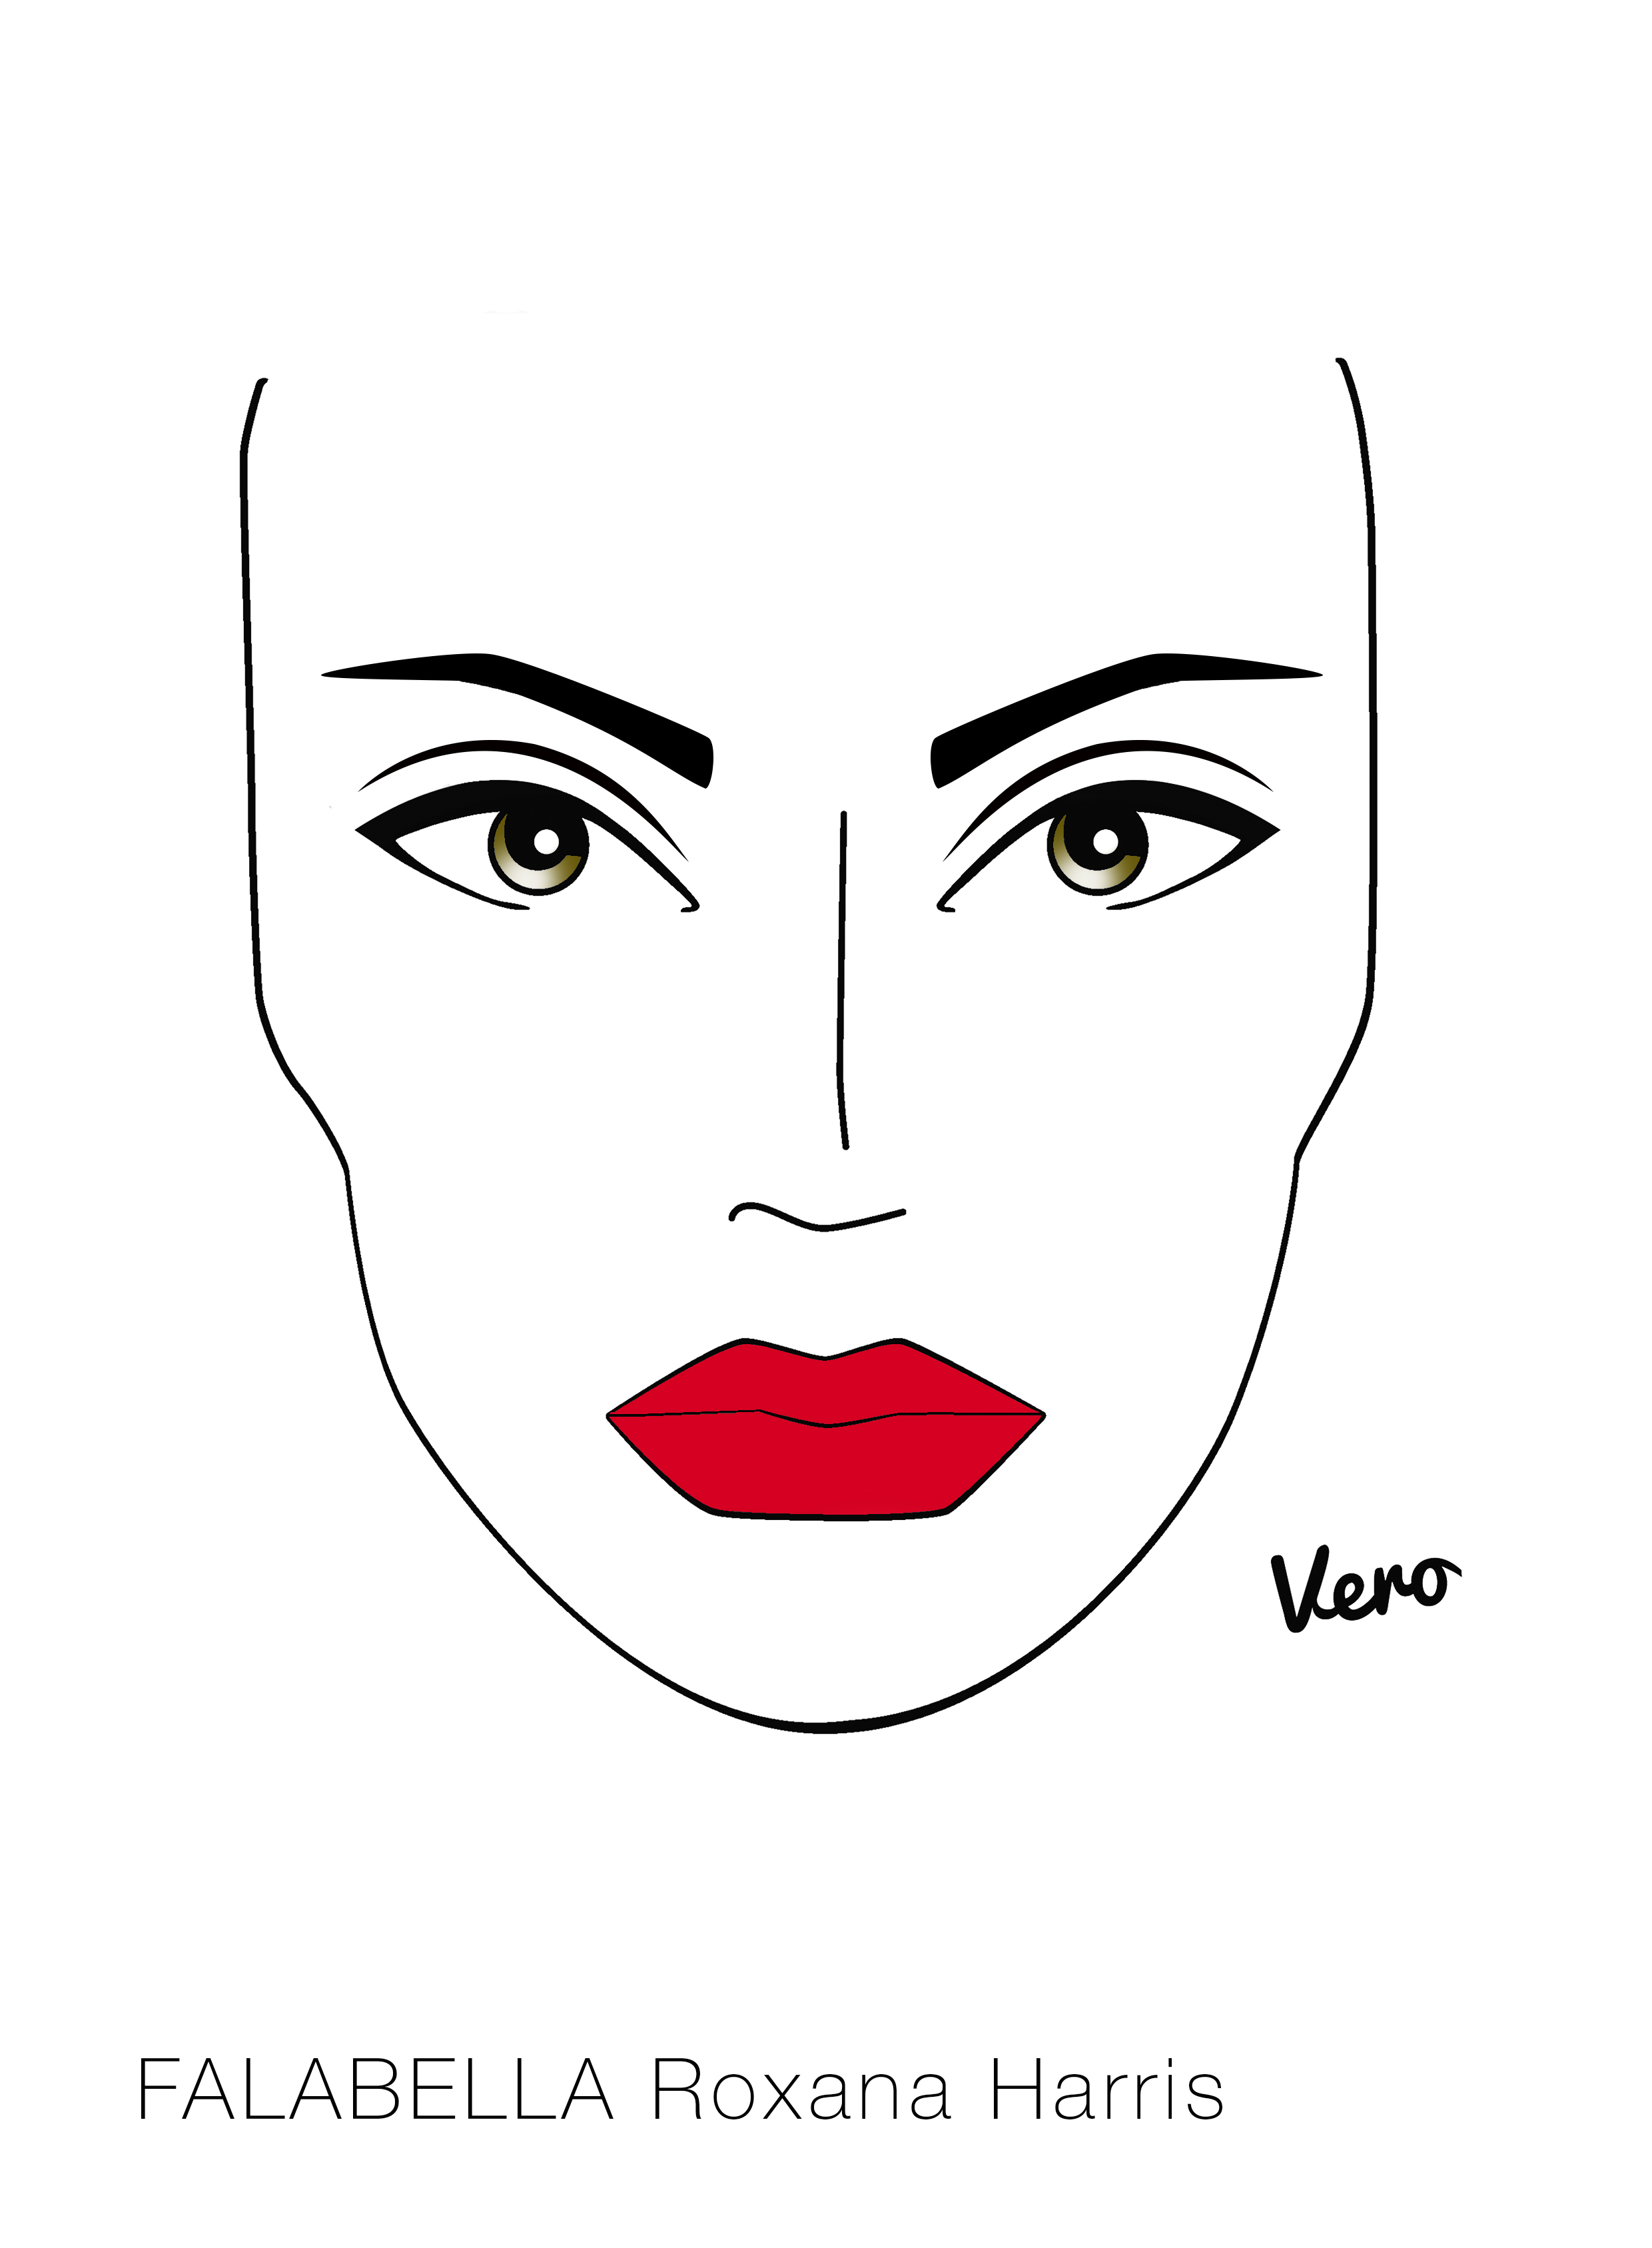 Este look toma pocos elementos y los resalta al máximo, las cejas están maquilladas con delineador kajal negro para delimitar su forma mientras que la boca vibra y contrasta con un rojo intenso.